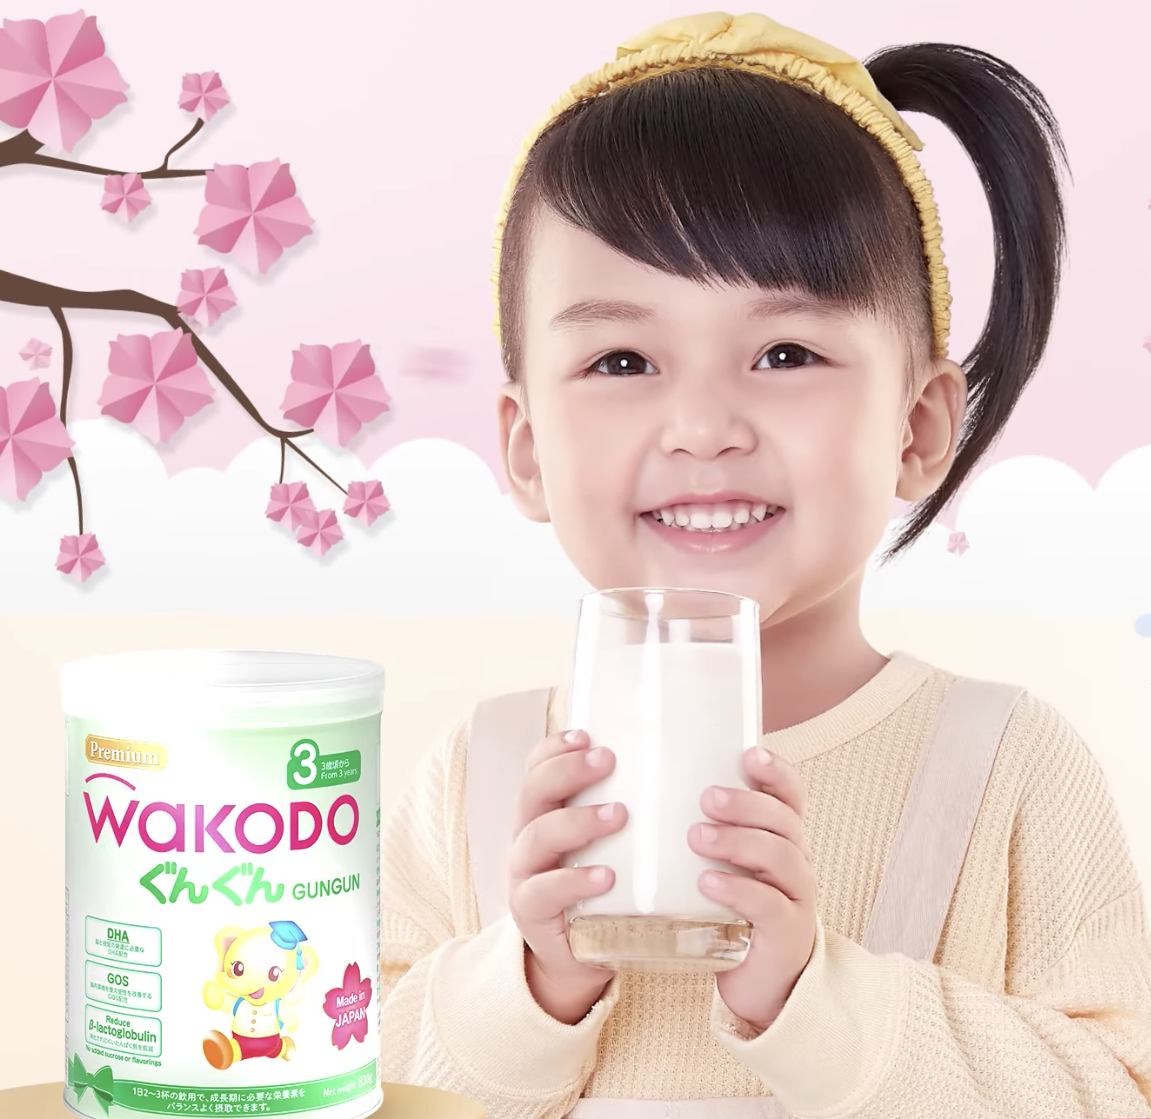 Sữa Wakodo có mấy loại? Nên chọn loại nào cho bé?